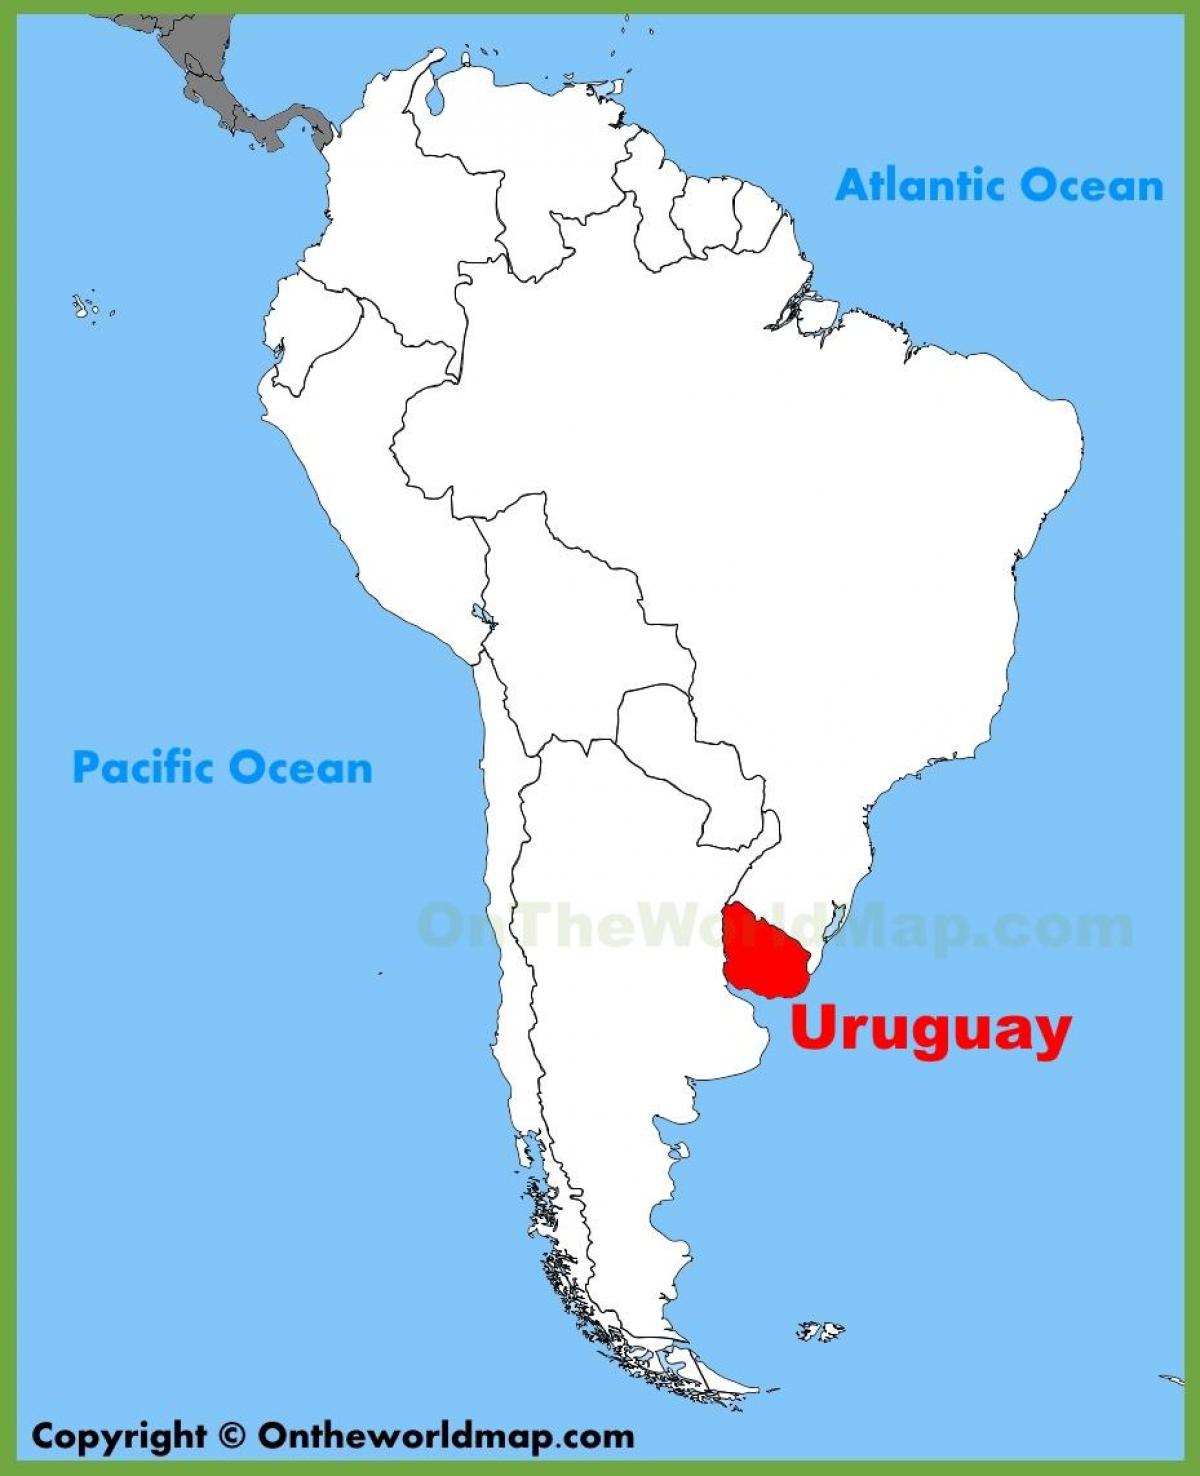 Uruguay kartta etelä-amerikka - Kartta Uruguay etelä-amerikassa (Etelä- Amerikka - Amerikka)